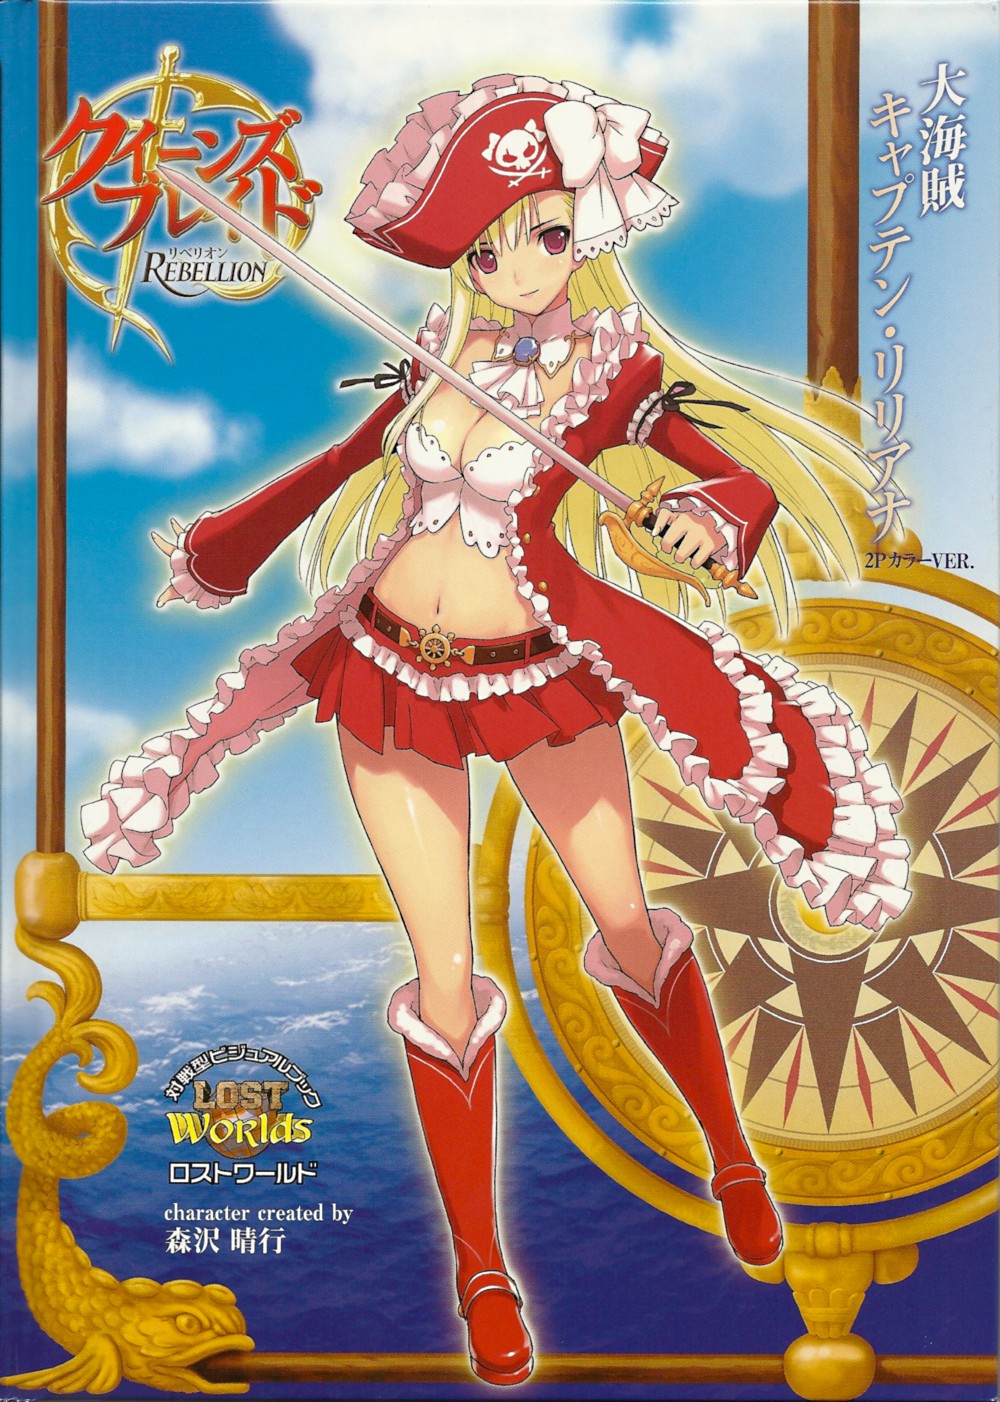 Фото Девушка-пиратка со шпагой в красном костюме из игры и аниме Queens Blade Rebellion / Клинок королевы